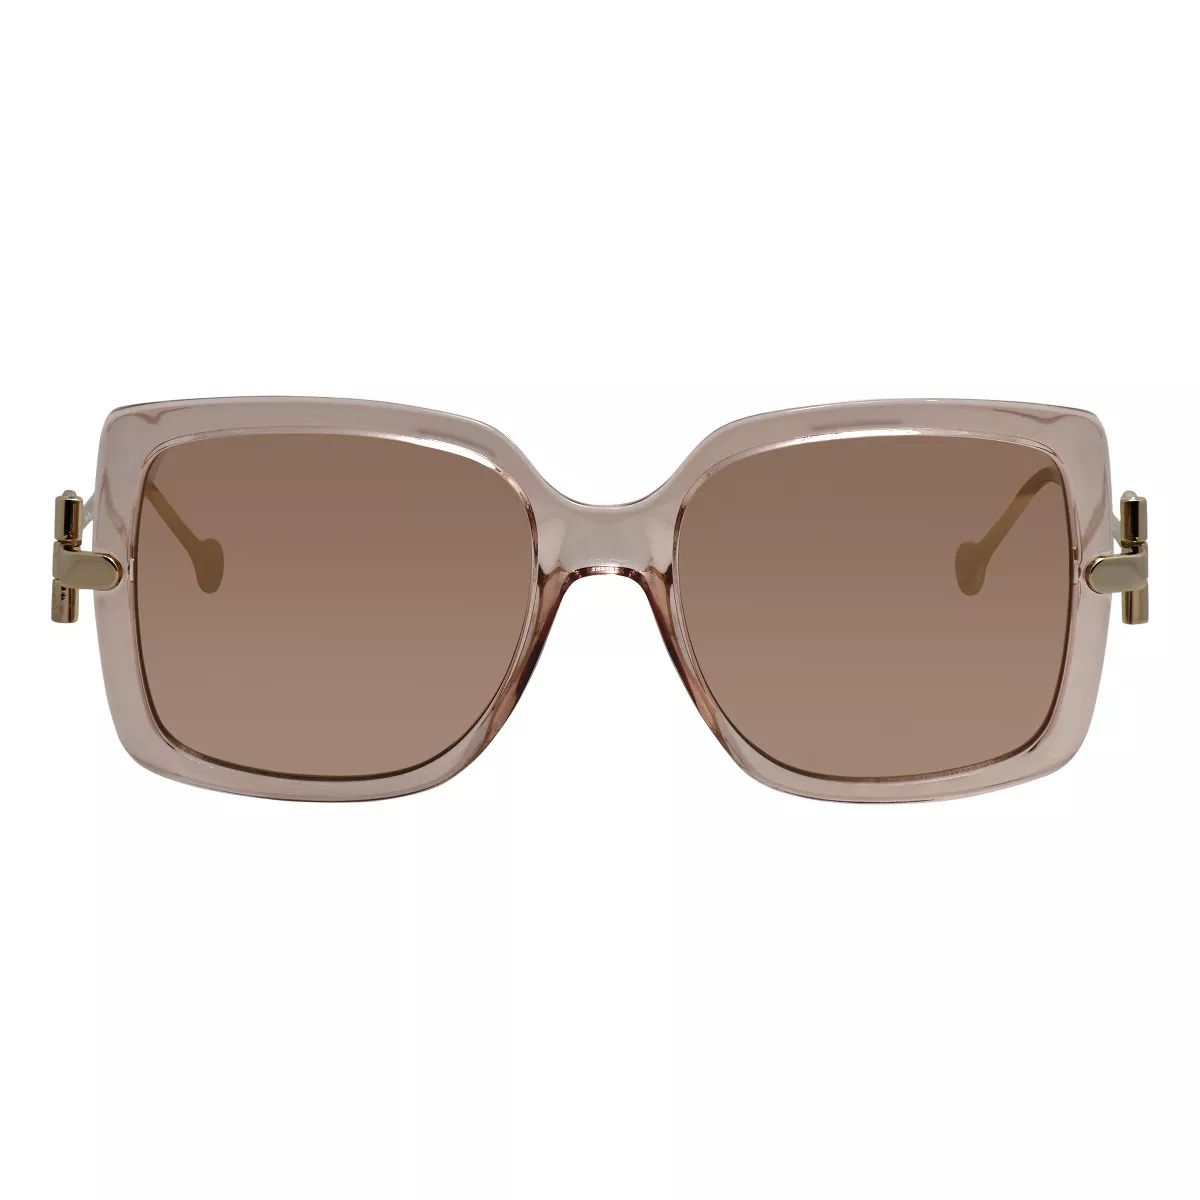 Salvatore Ferragamo SF 913S 290 Womens Square Sunglasses Nude 55mm | Target